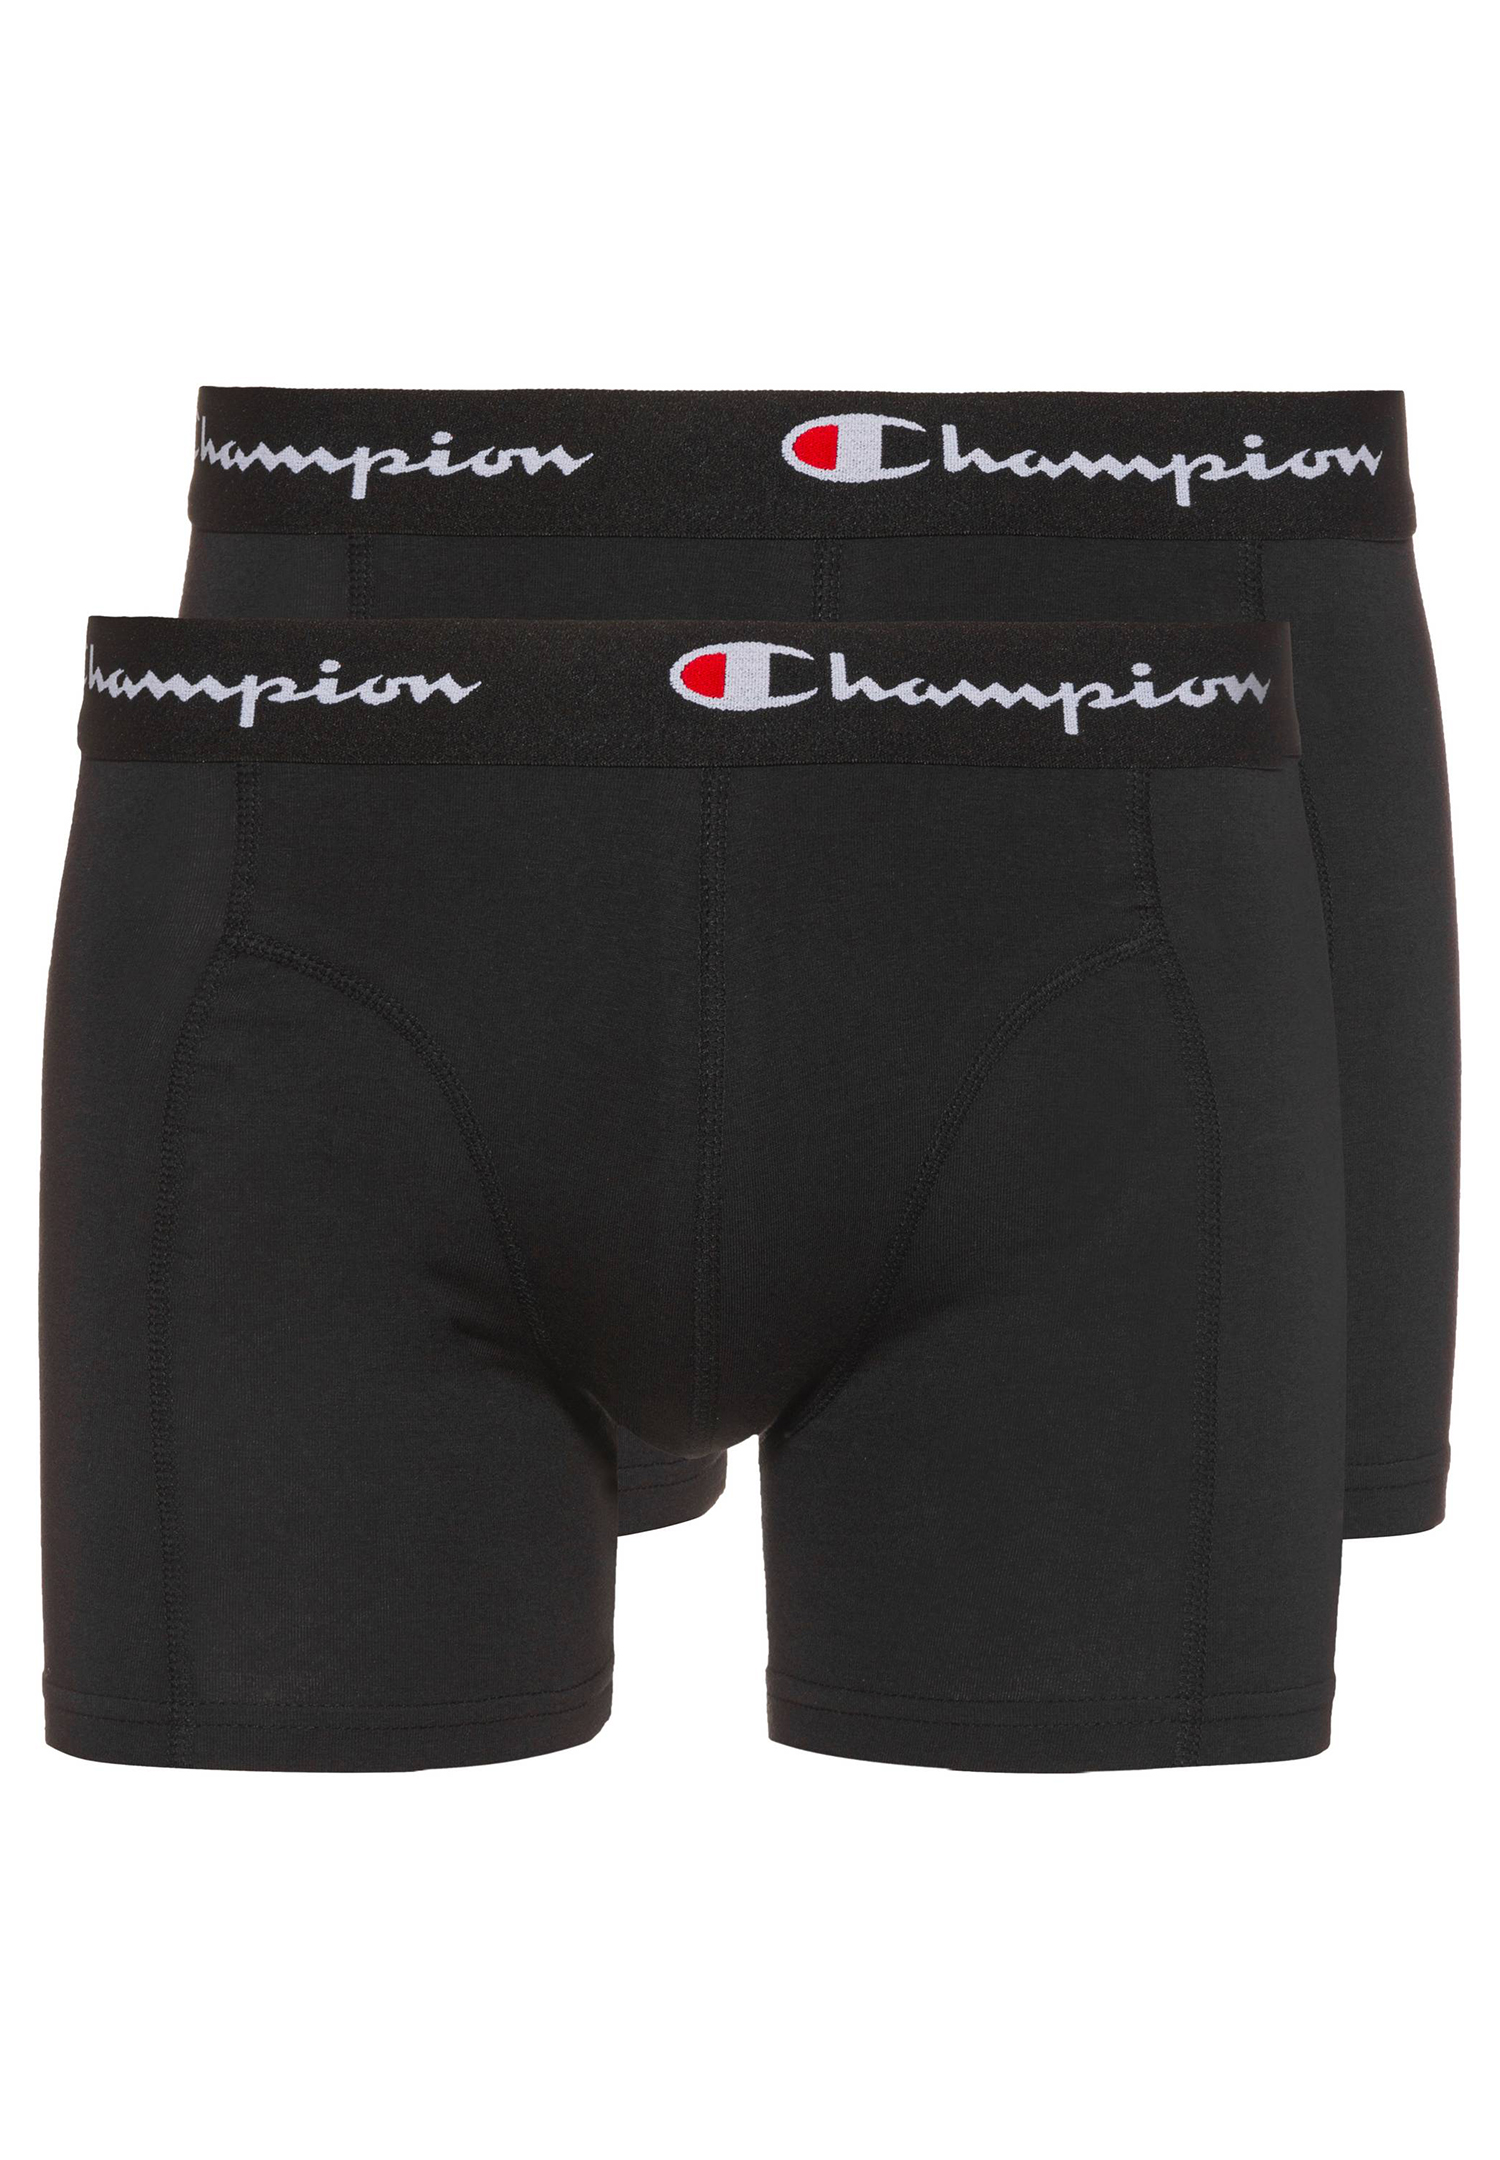 Champion Boxershorts Men Herren Unterhose Pant Boxer Unterwäsche 2er Pack von Champion